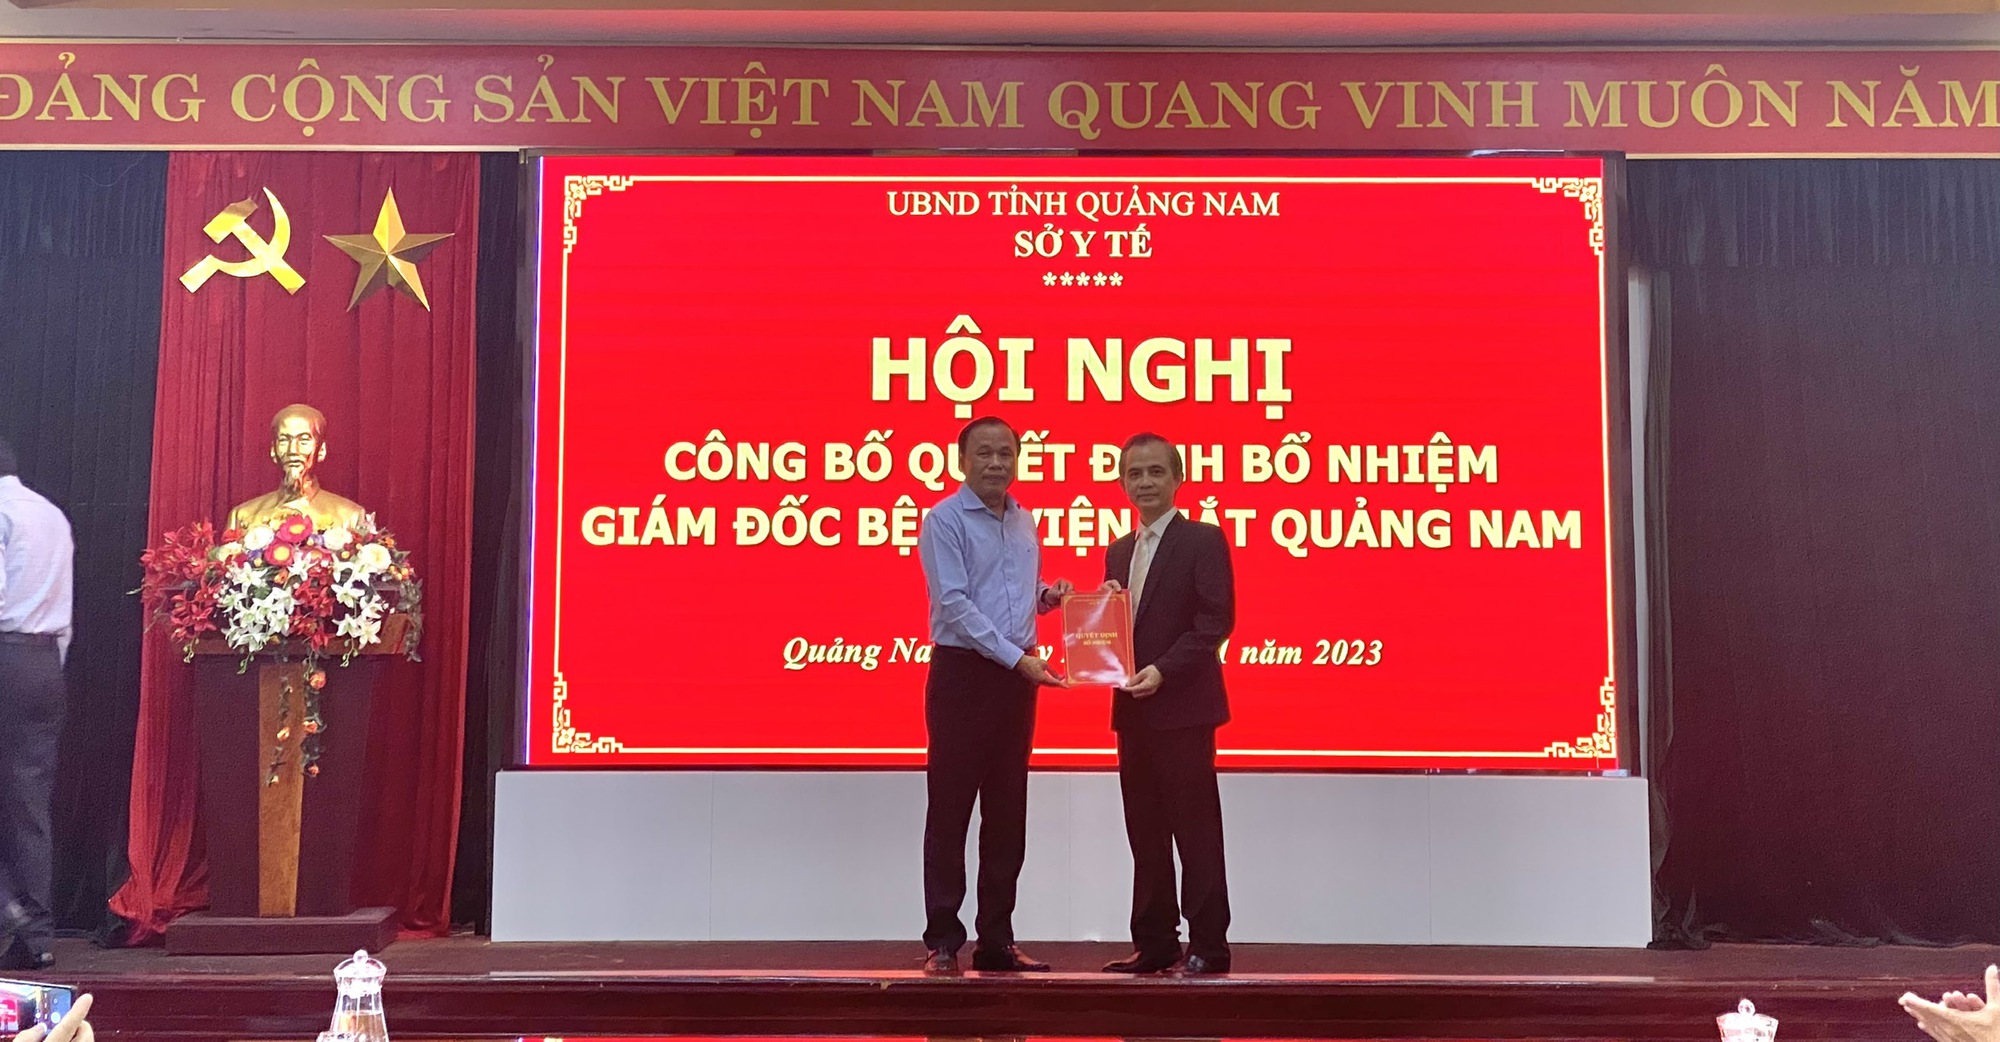 Phó Giám đốc sở ở Quảng Nam xin thôi chức được bổ nhiệm làm Giám đốc Bệnh viện Mắt - Ảnh 1.